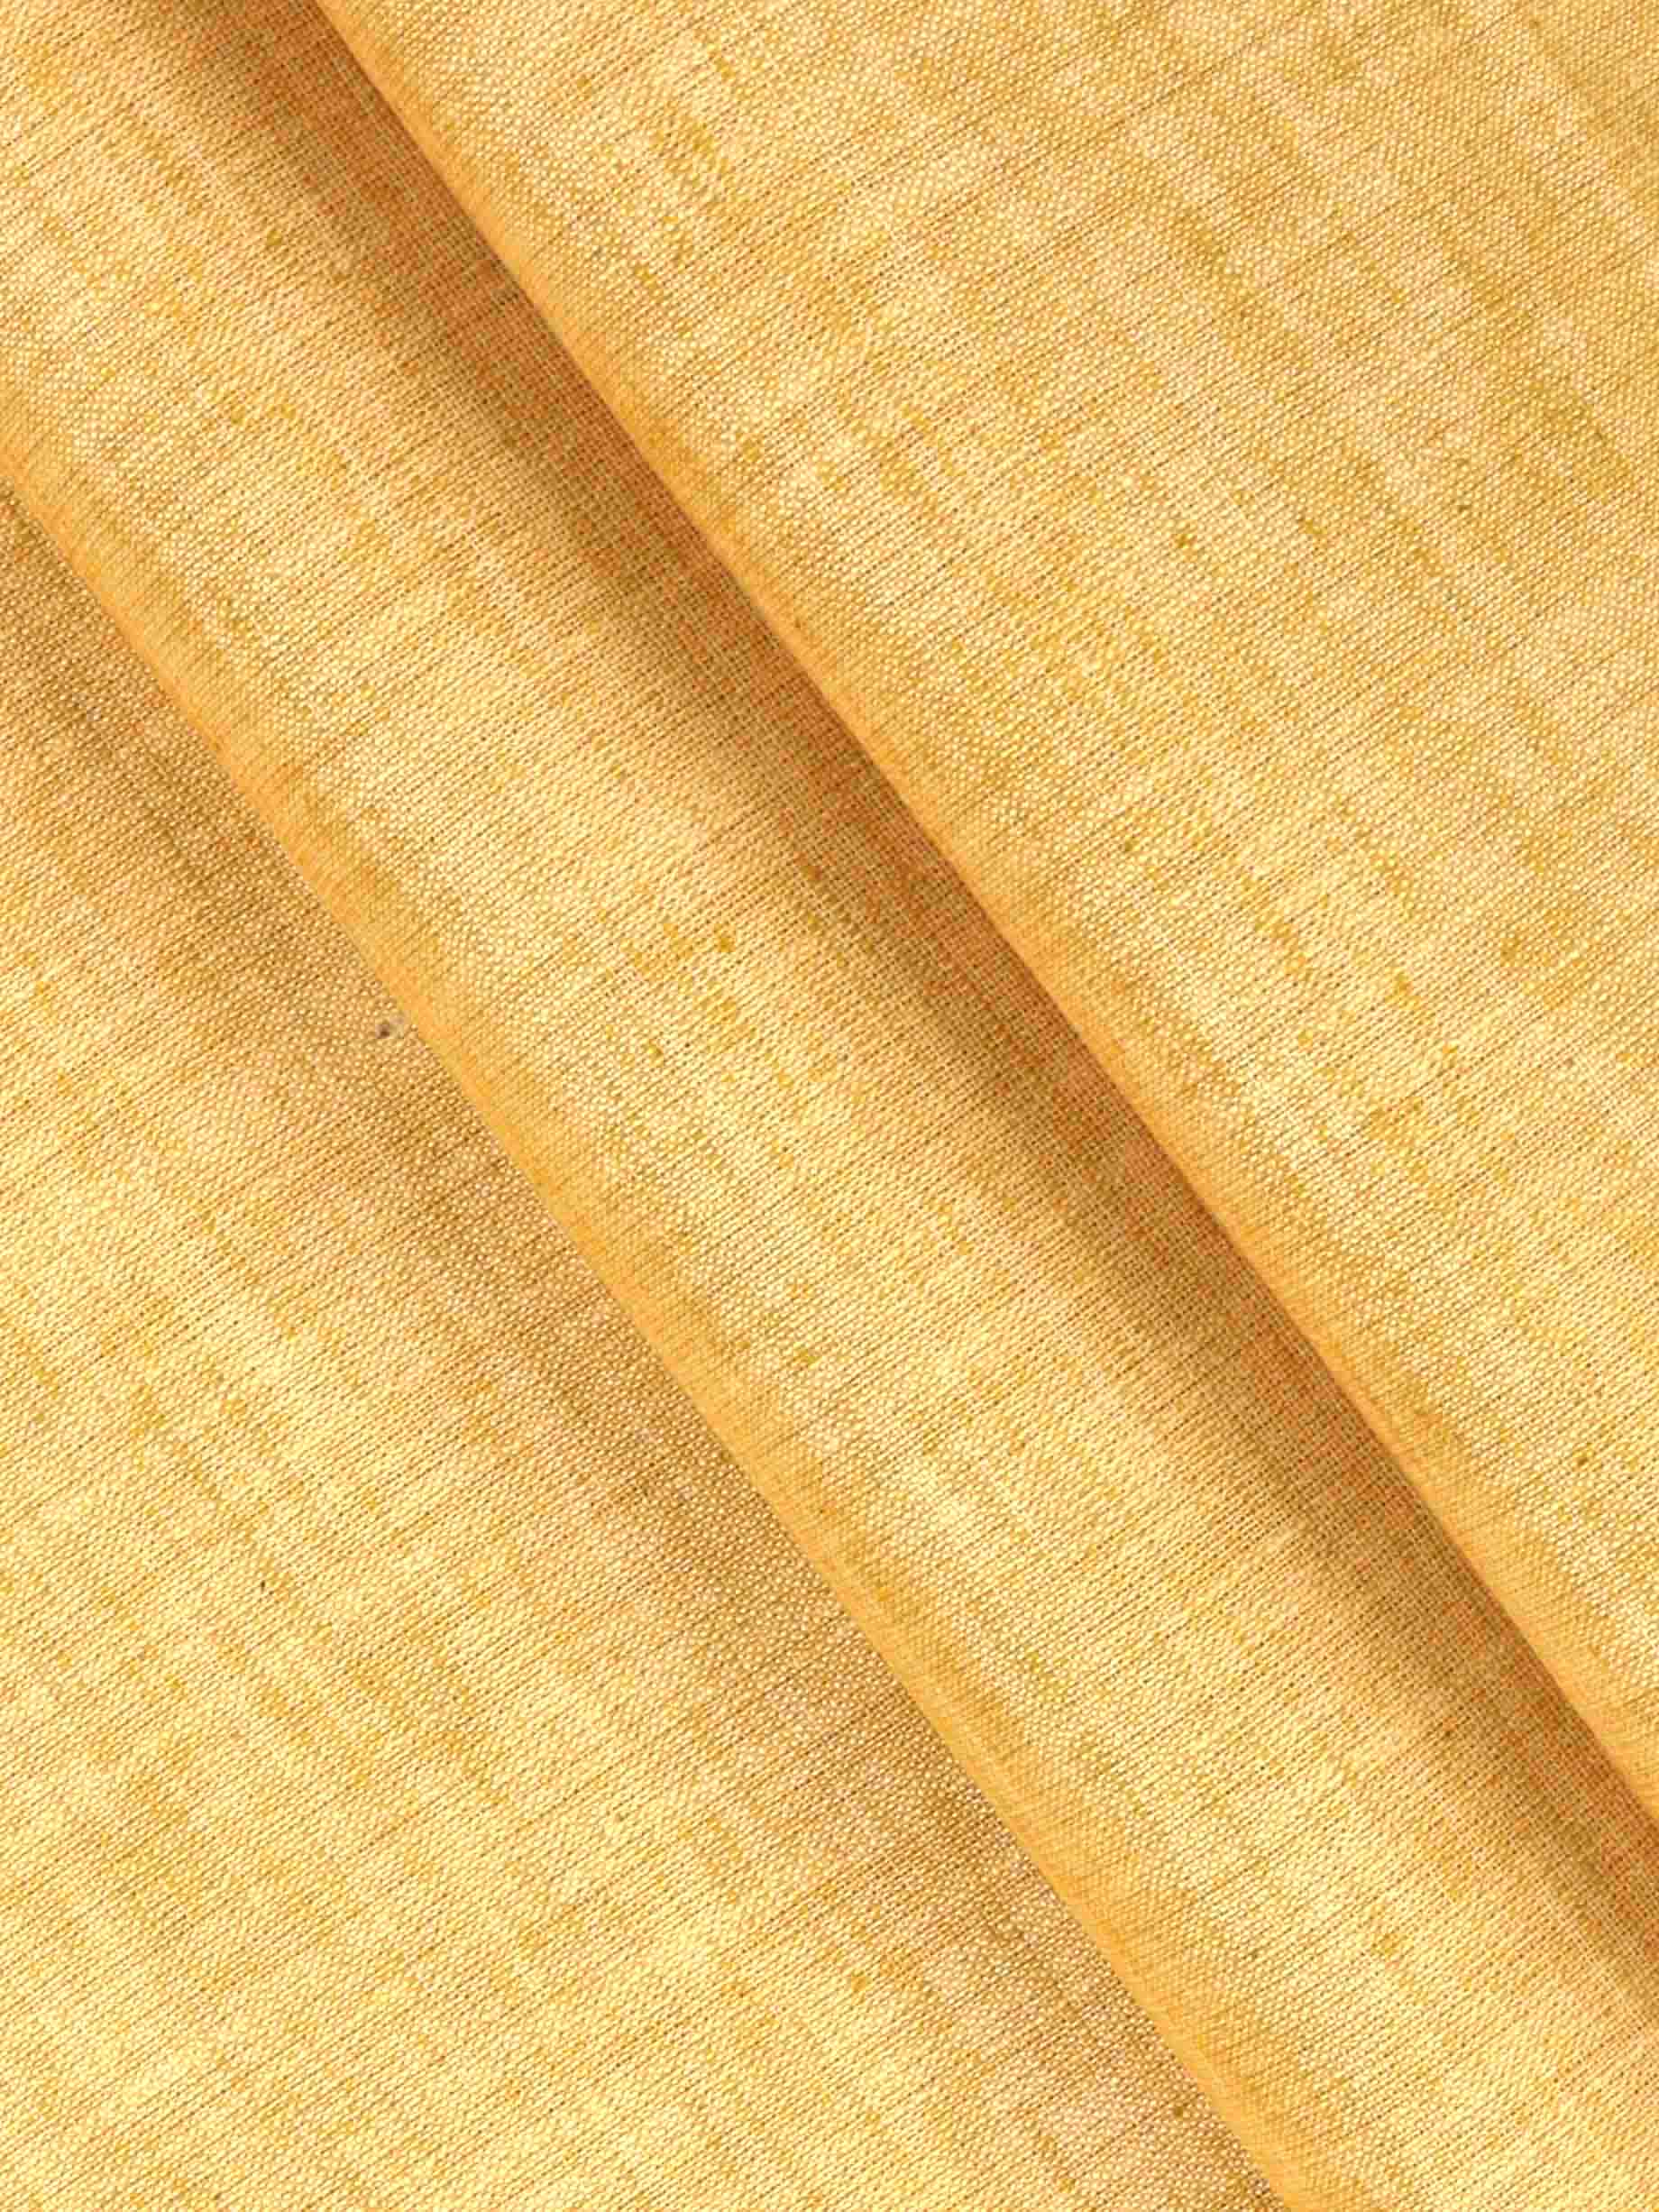 Cotton Blend Mustard Colour Kurtha Fabric Lampus - APC1106-34